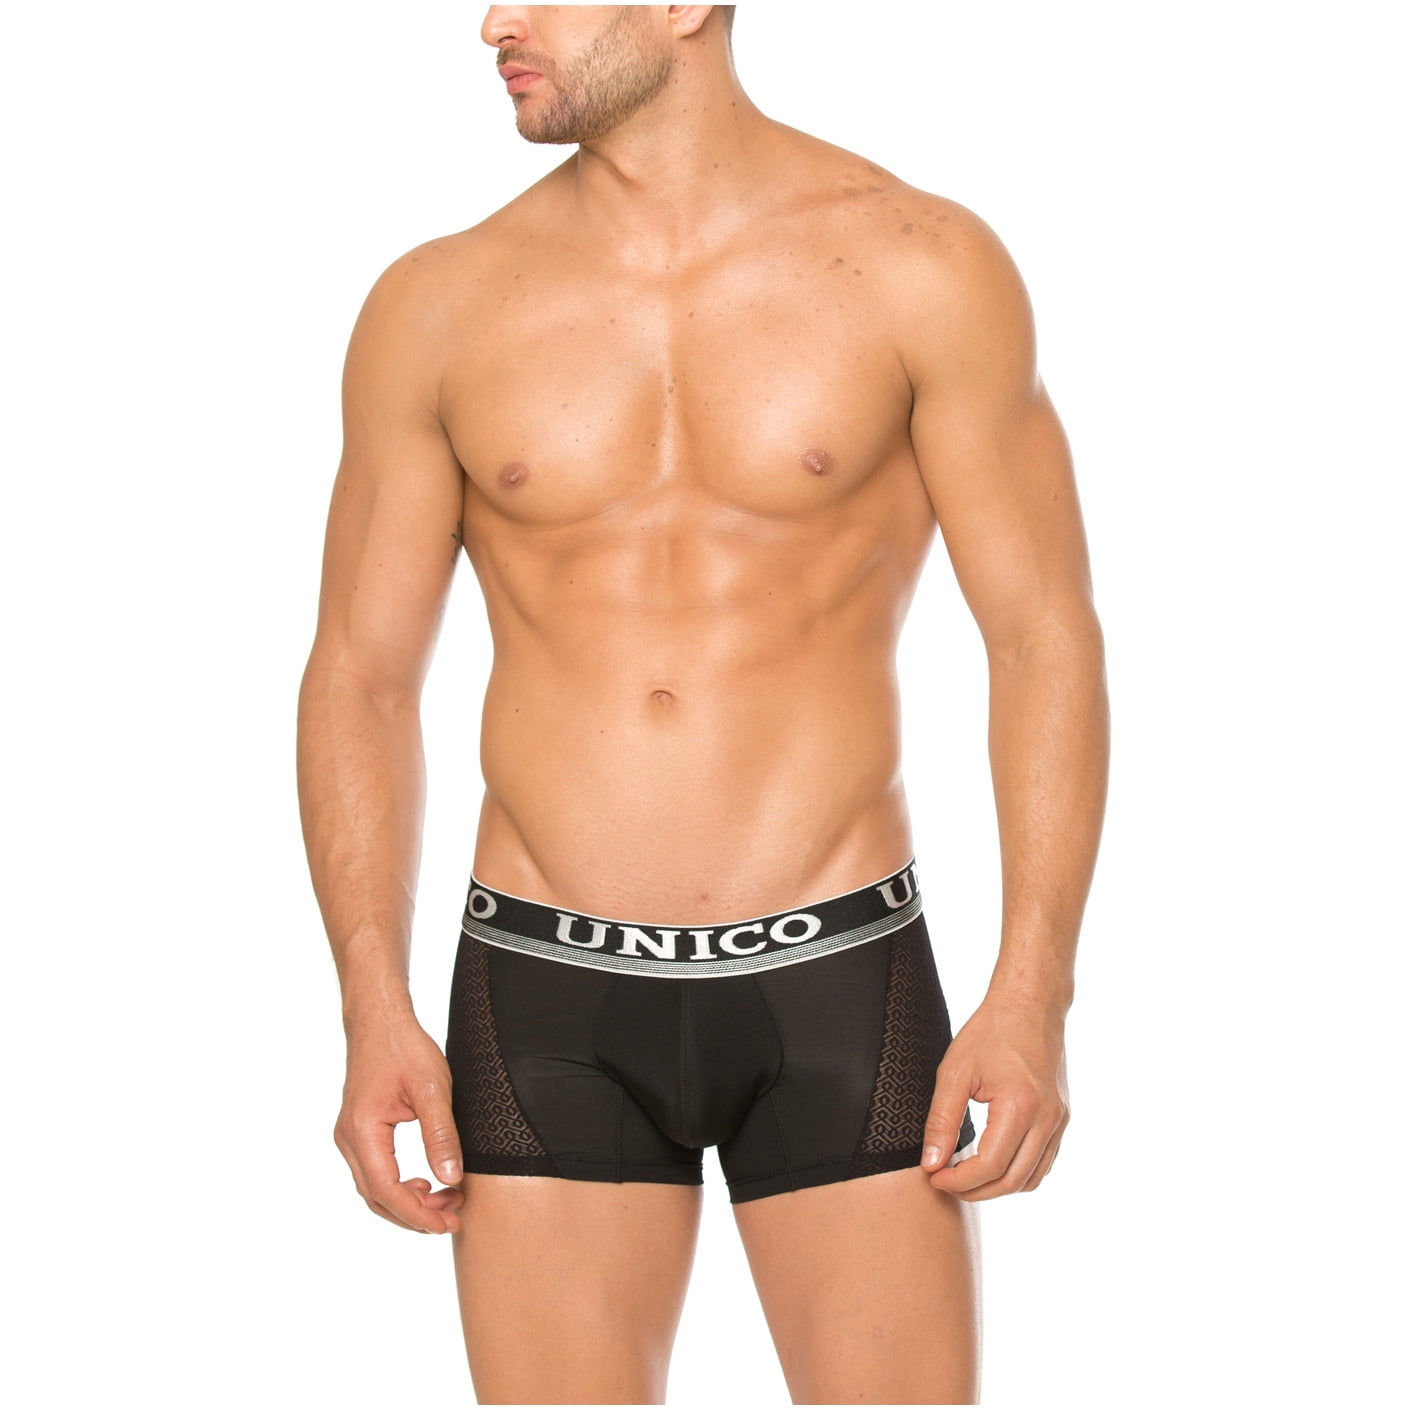 Mundo Unico Solid Microfiber Boxer Briefs Underwear for Men Calzoncillos para Hombres Black S